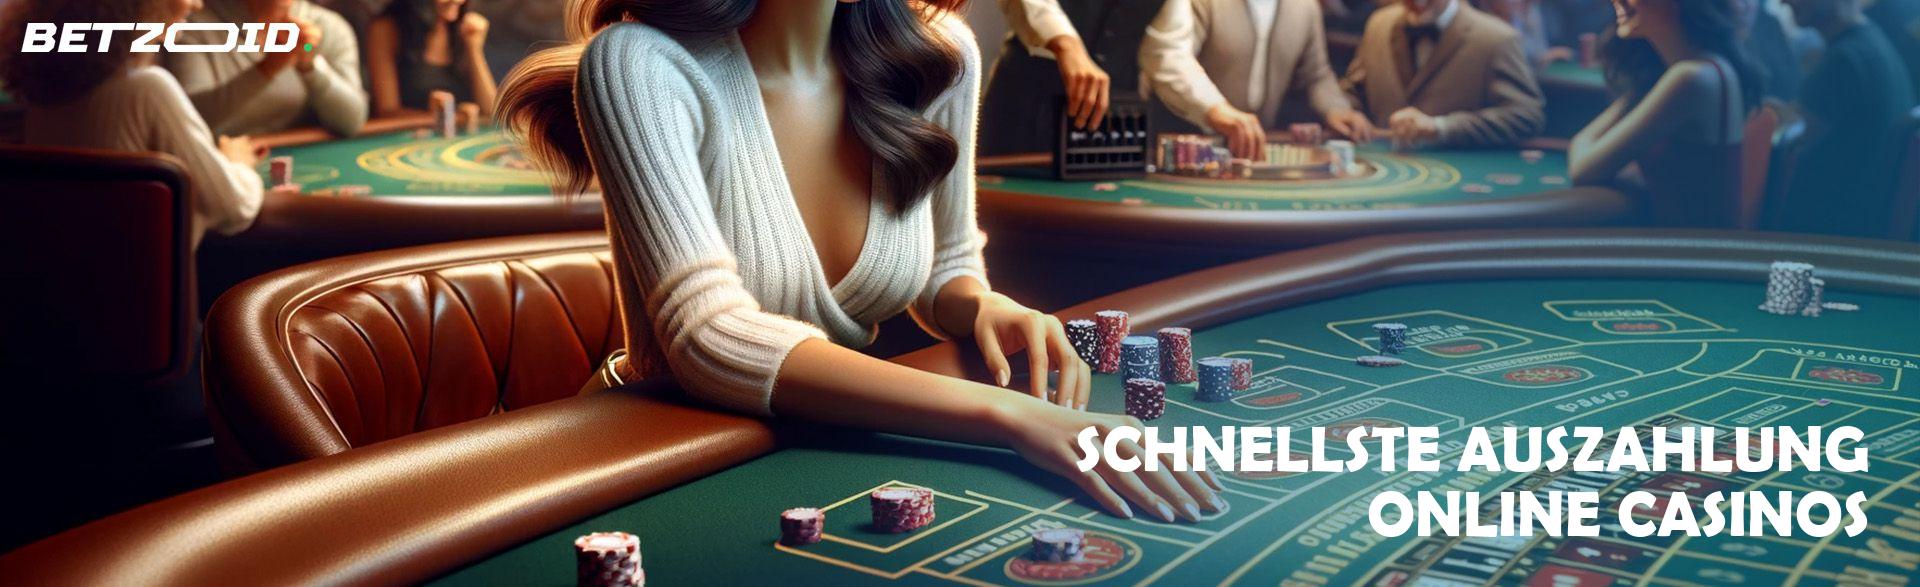 Das unerzählte Geheimnis von sicheres online casino in weniger als zehn Minuten